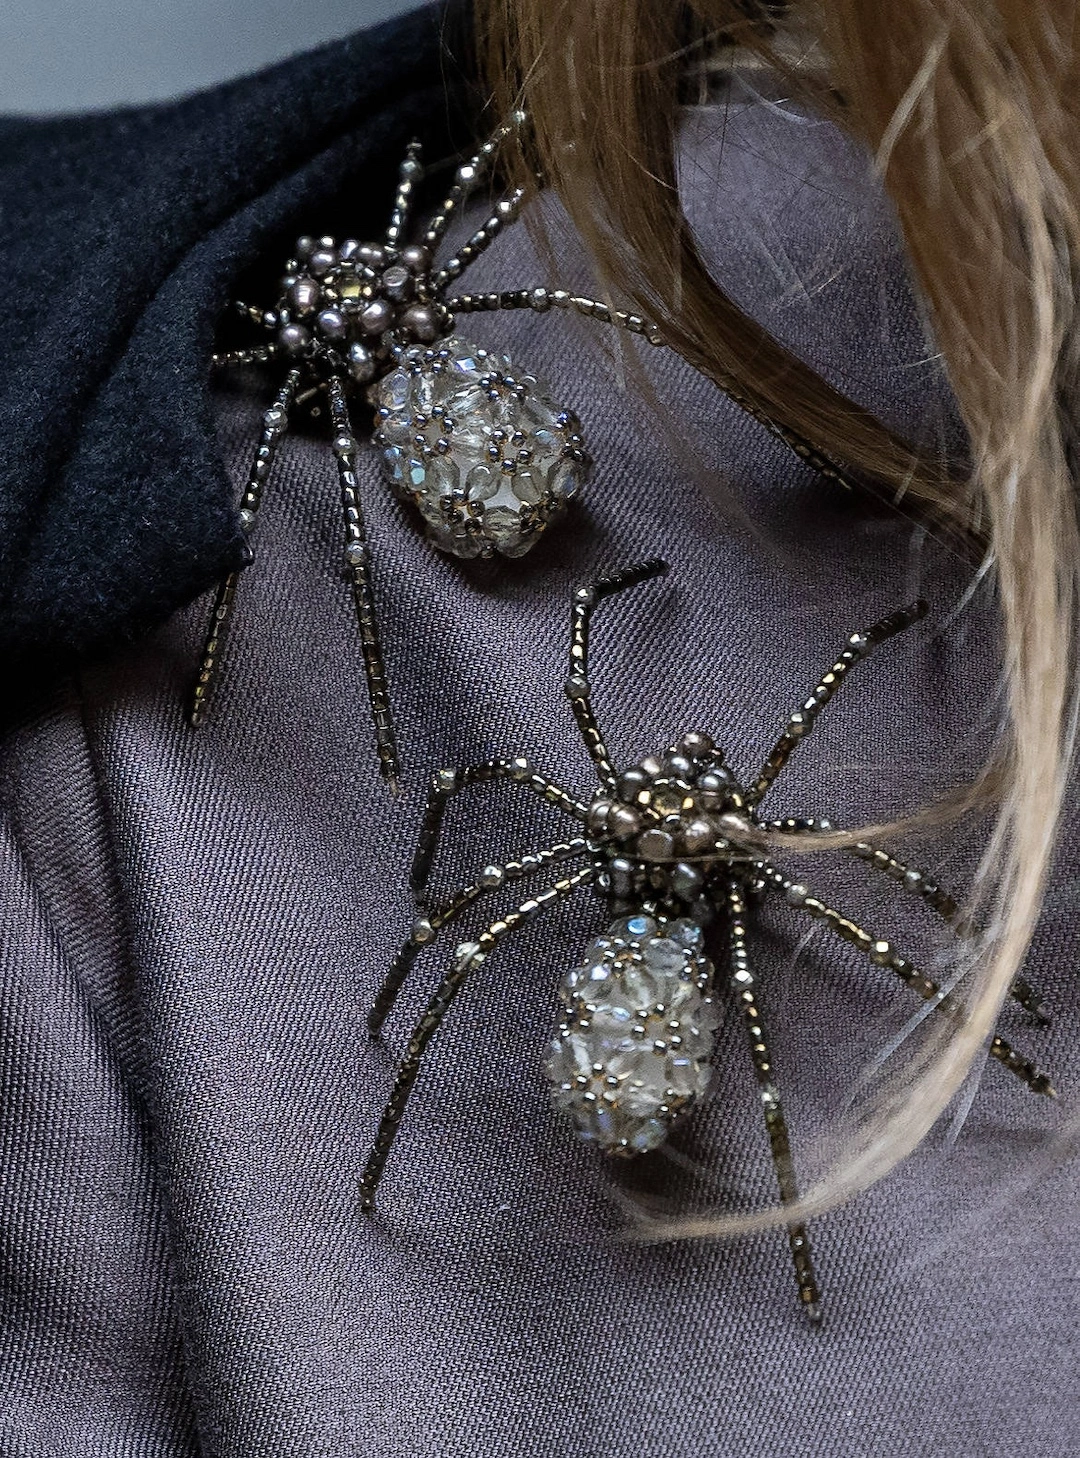 Königin Maxima mit Spinnen auf ihrer Schulter. © IMAGO / Bruno Press